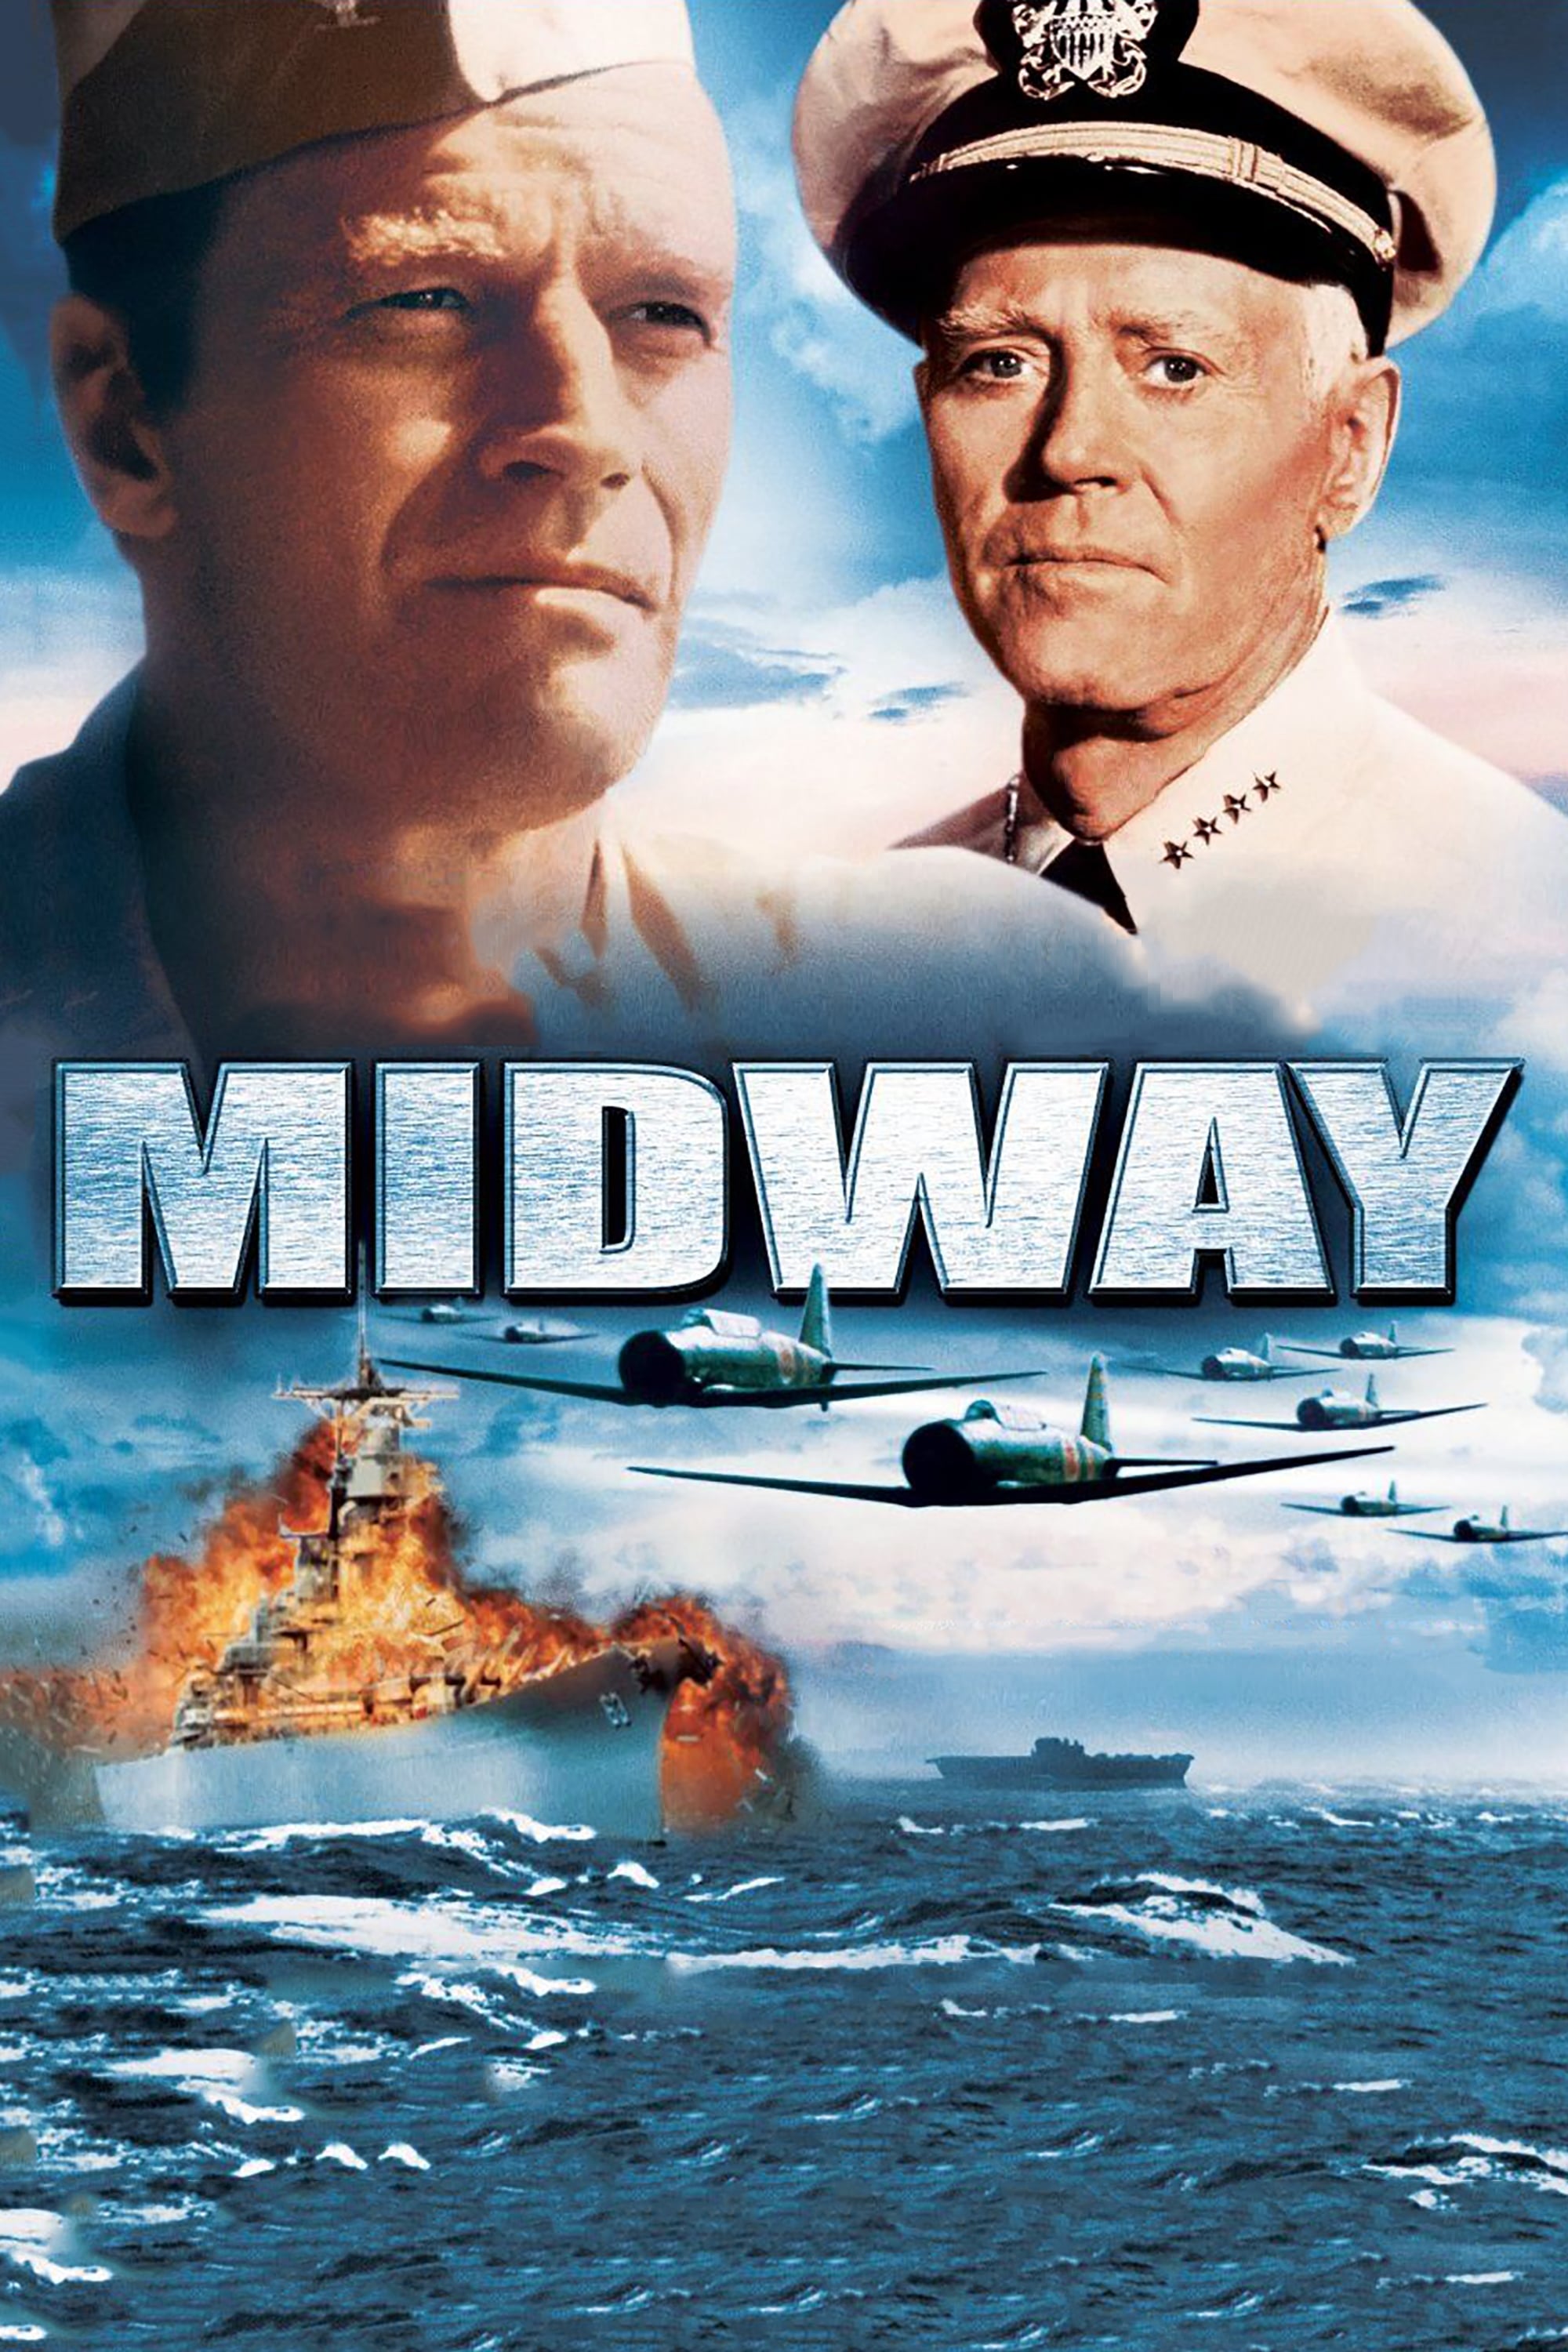 Schlacht um Midway (1976)